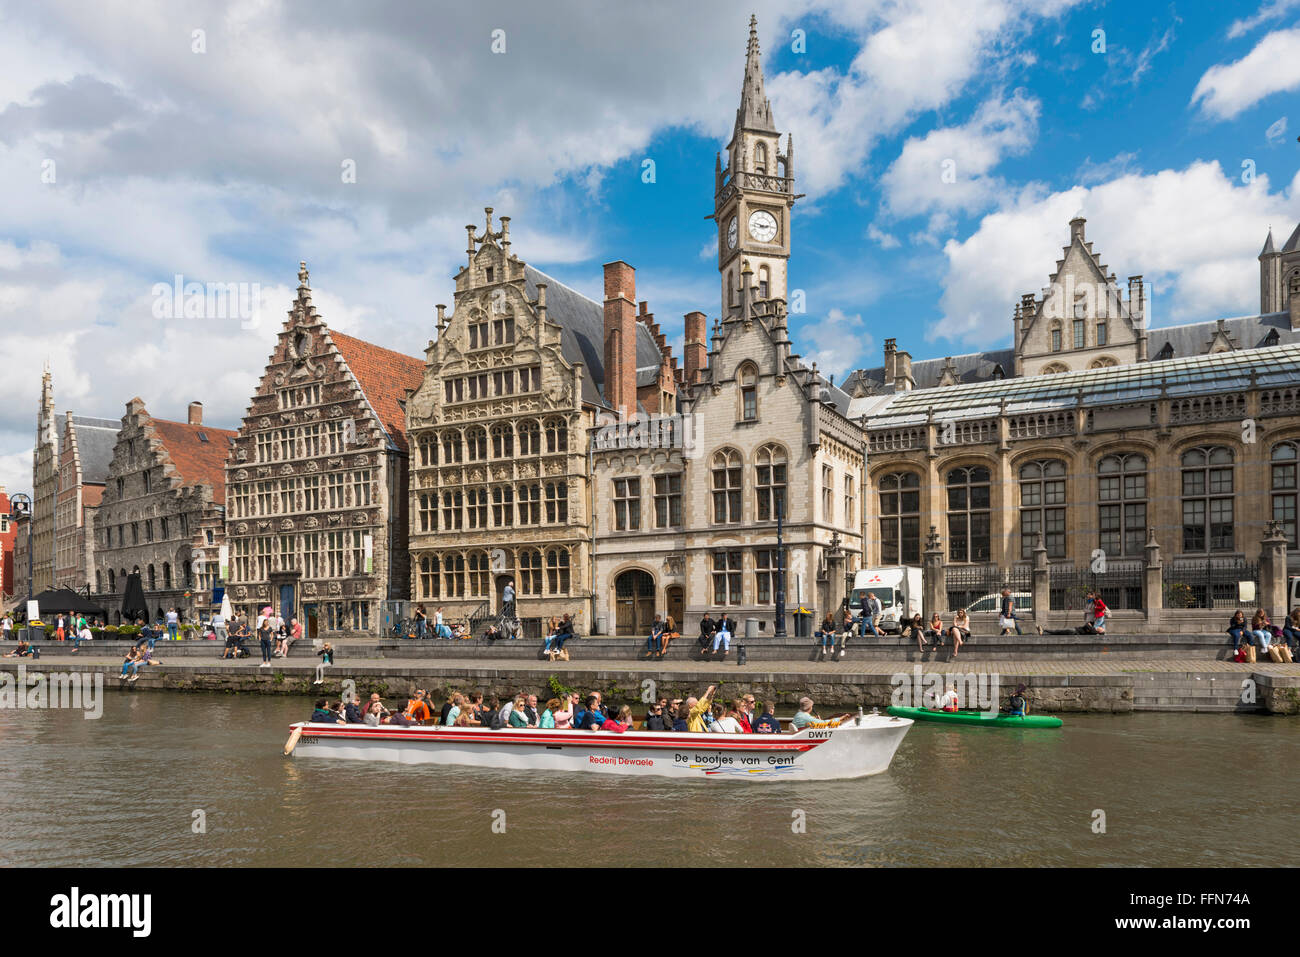 Gand, Belgique - bateau plein de touristes sur une excursion sur la rivière Lys dans la belle ville de Gand, Belgique, Europe Banque D'Images